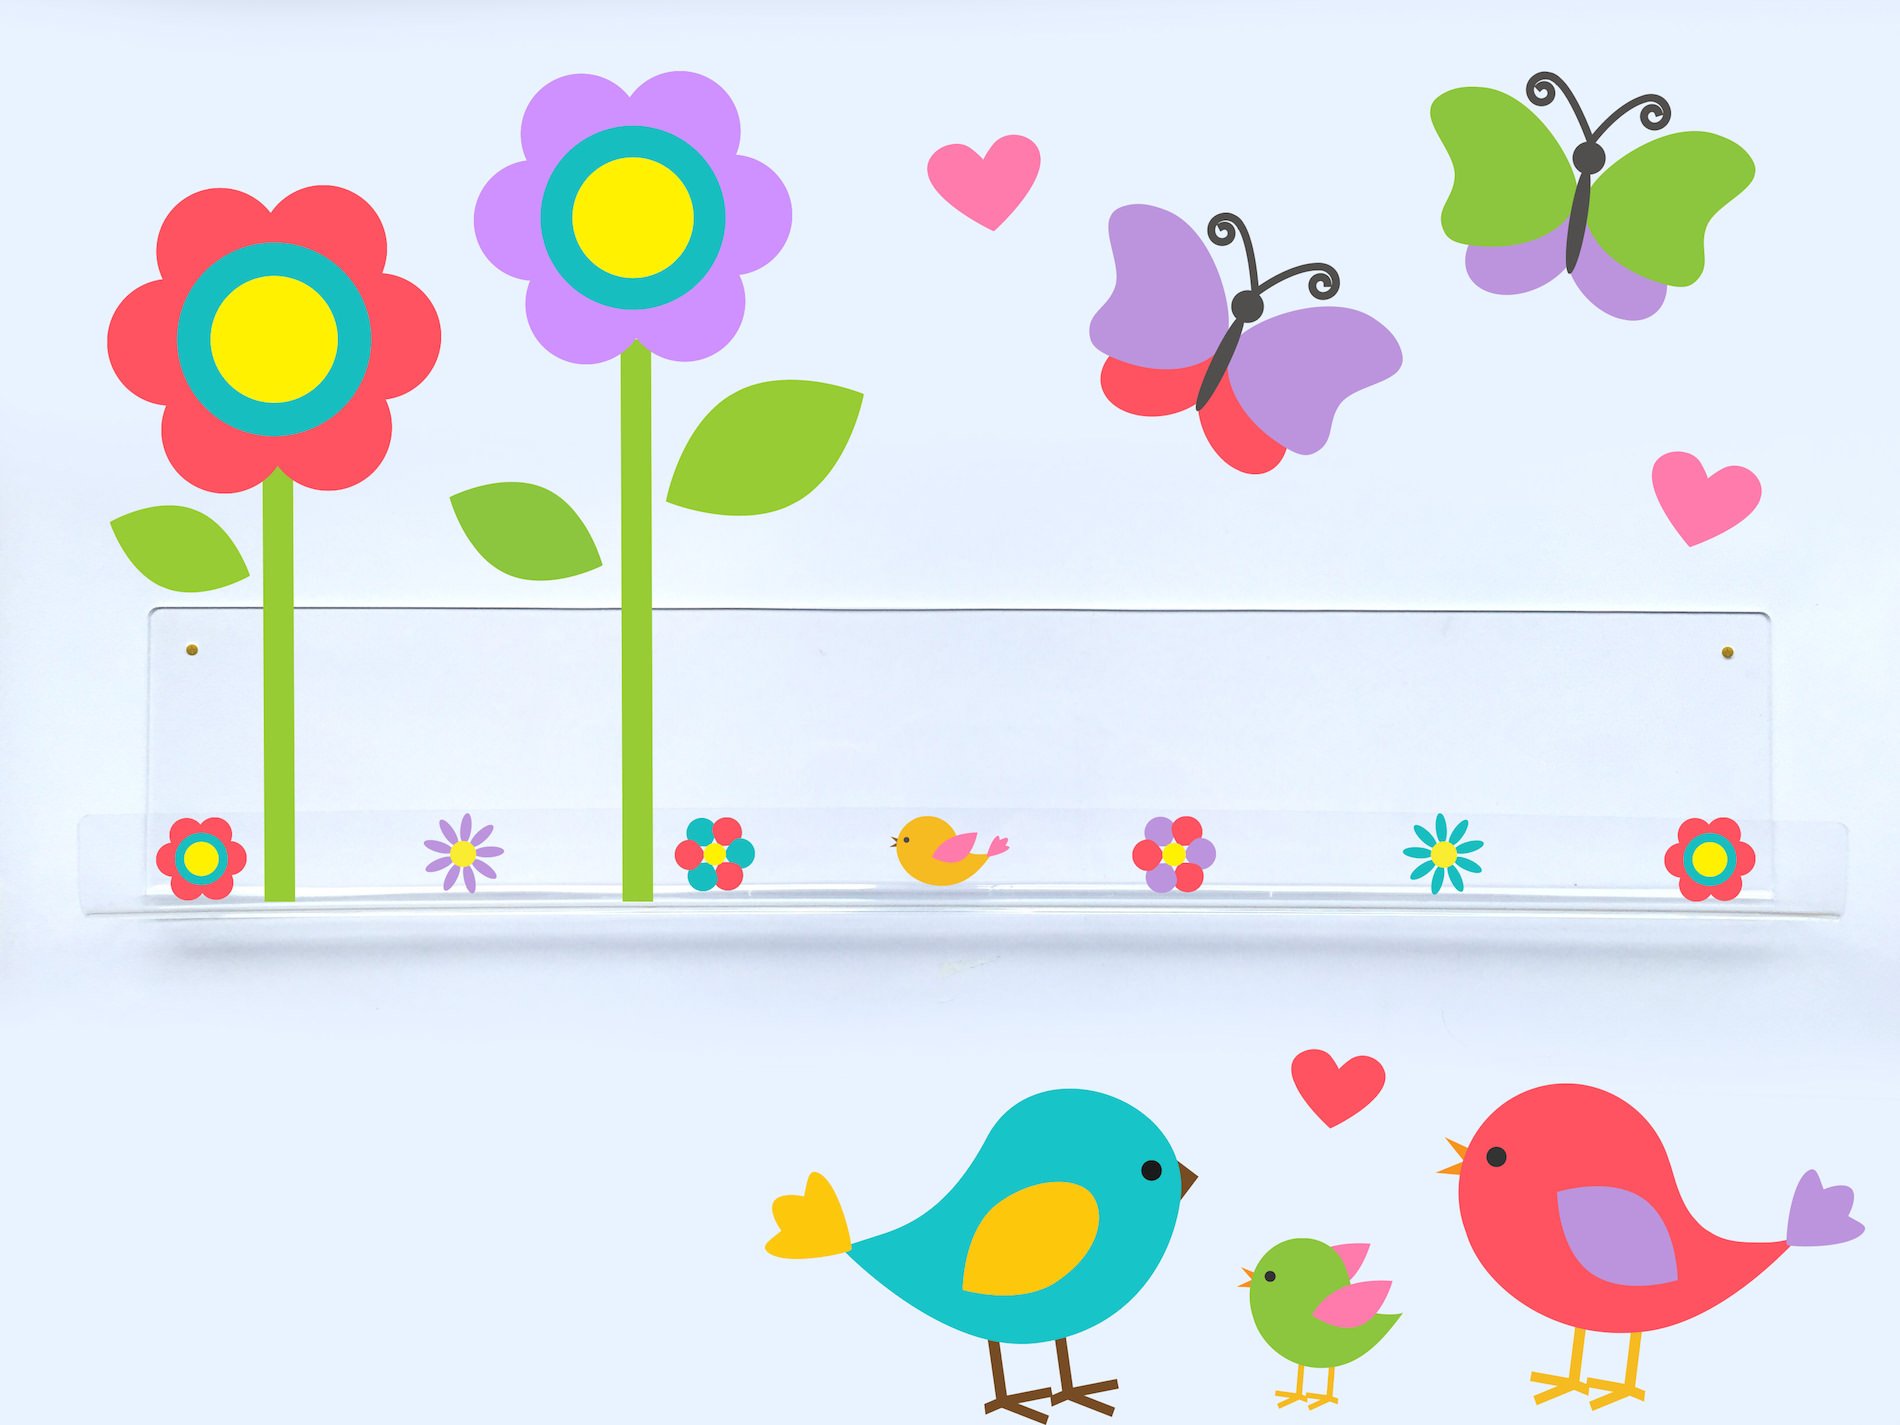 Livreiro de Parede Infantil Pássaros, Borboletas e Flores